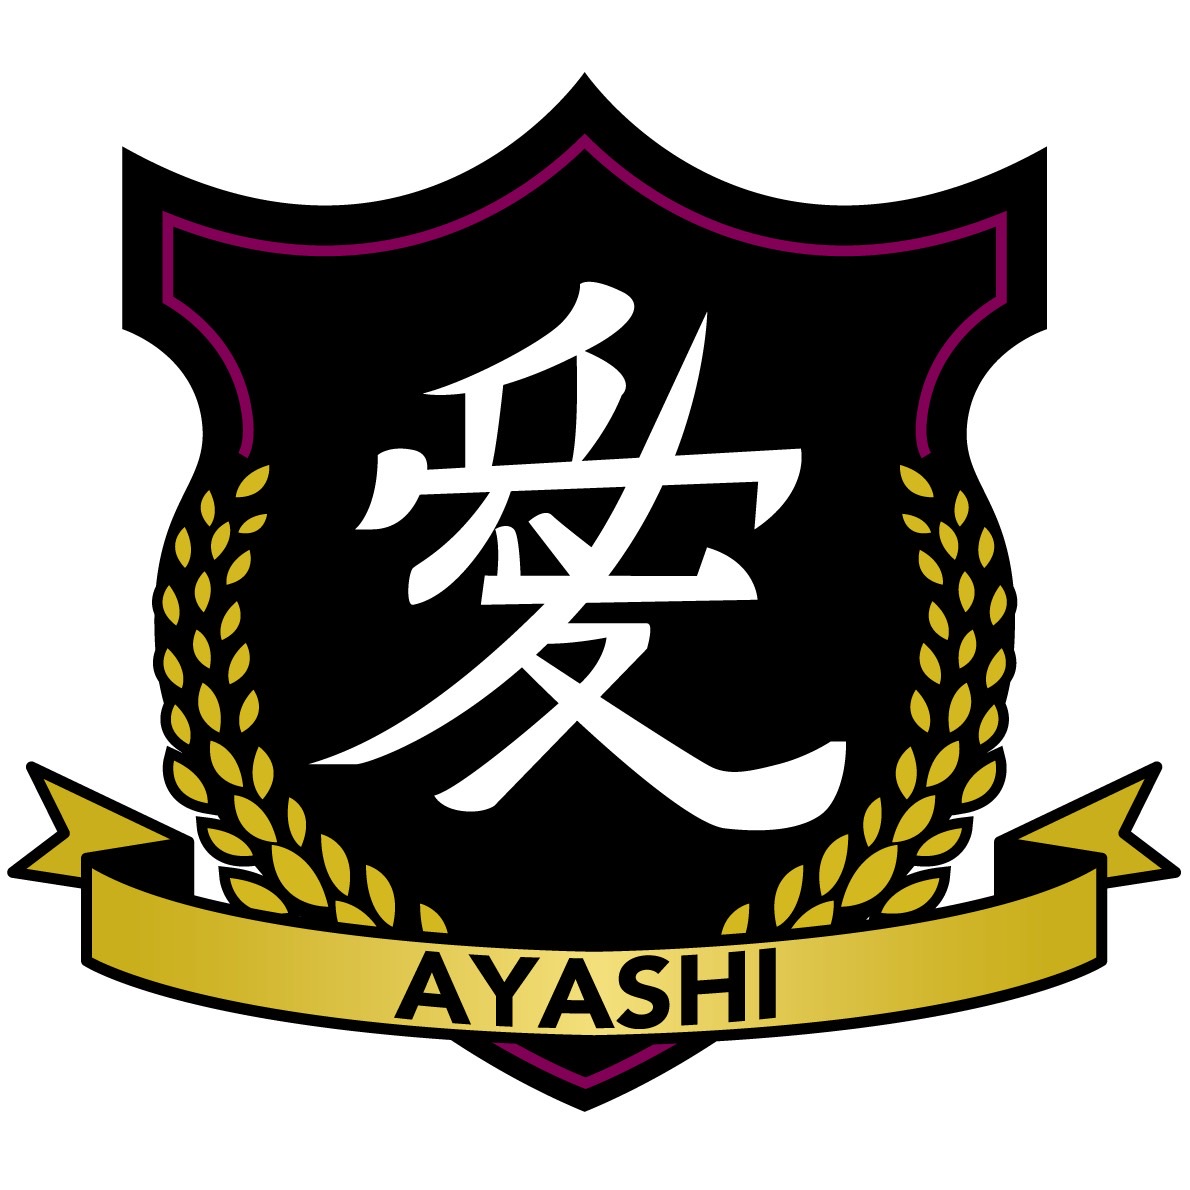 5th-miyagi-ayashi-emblem